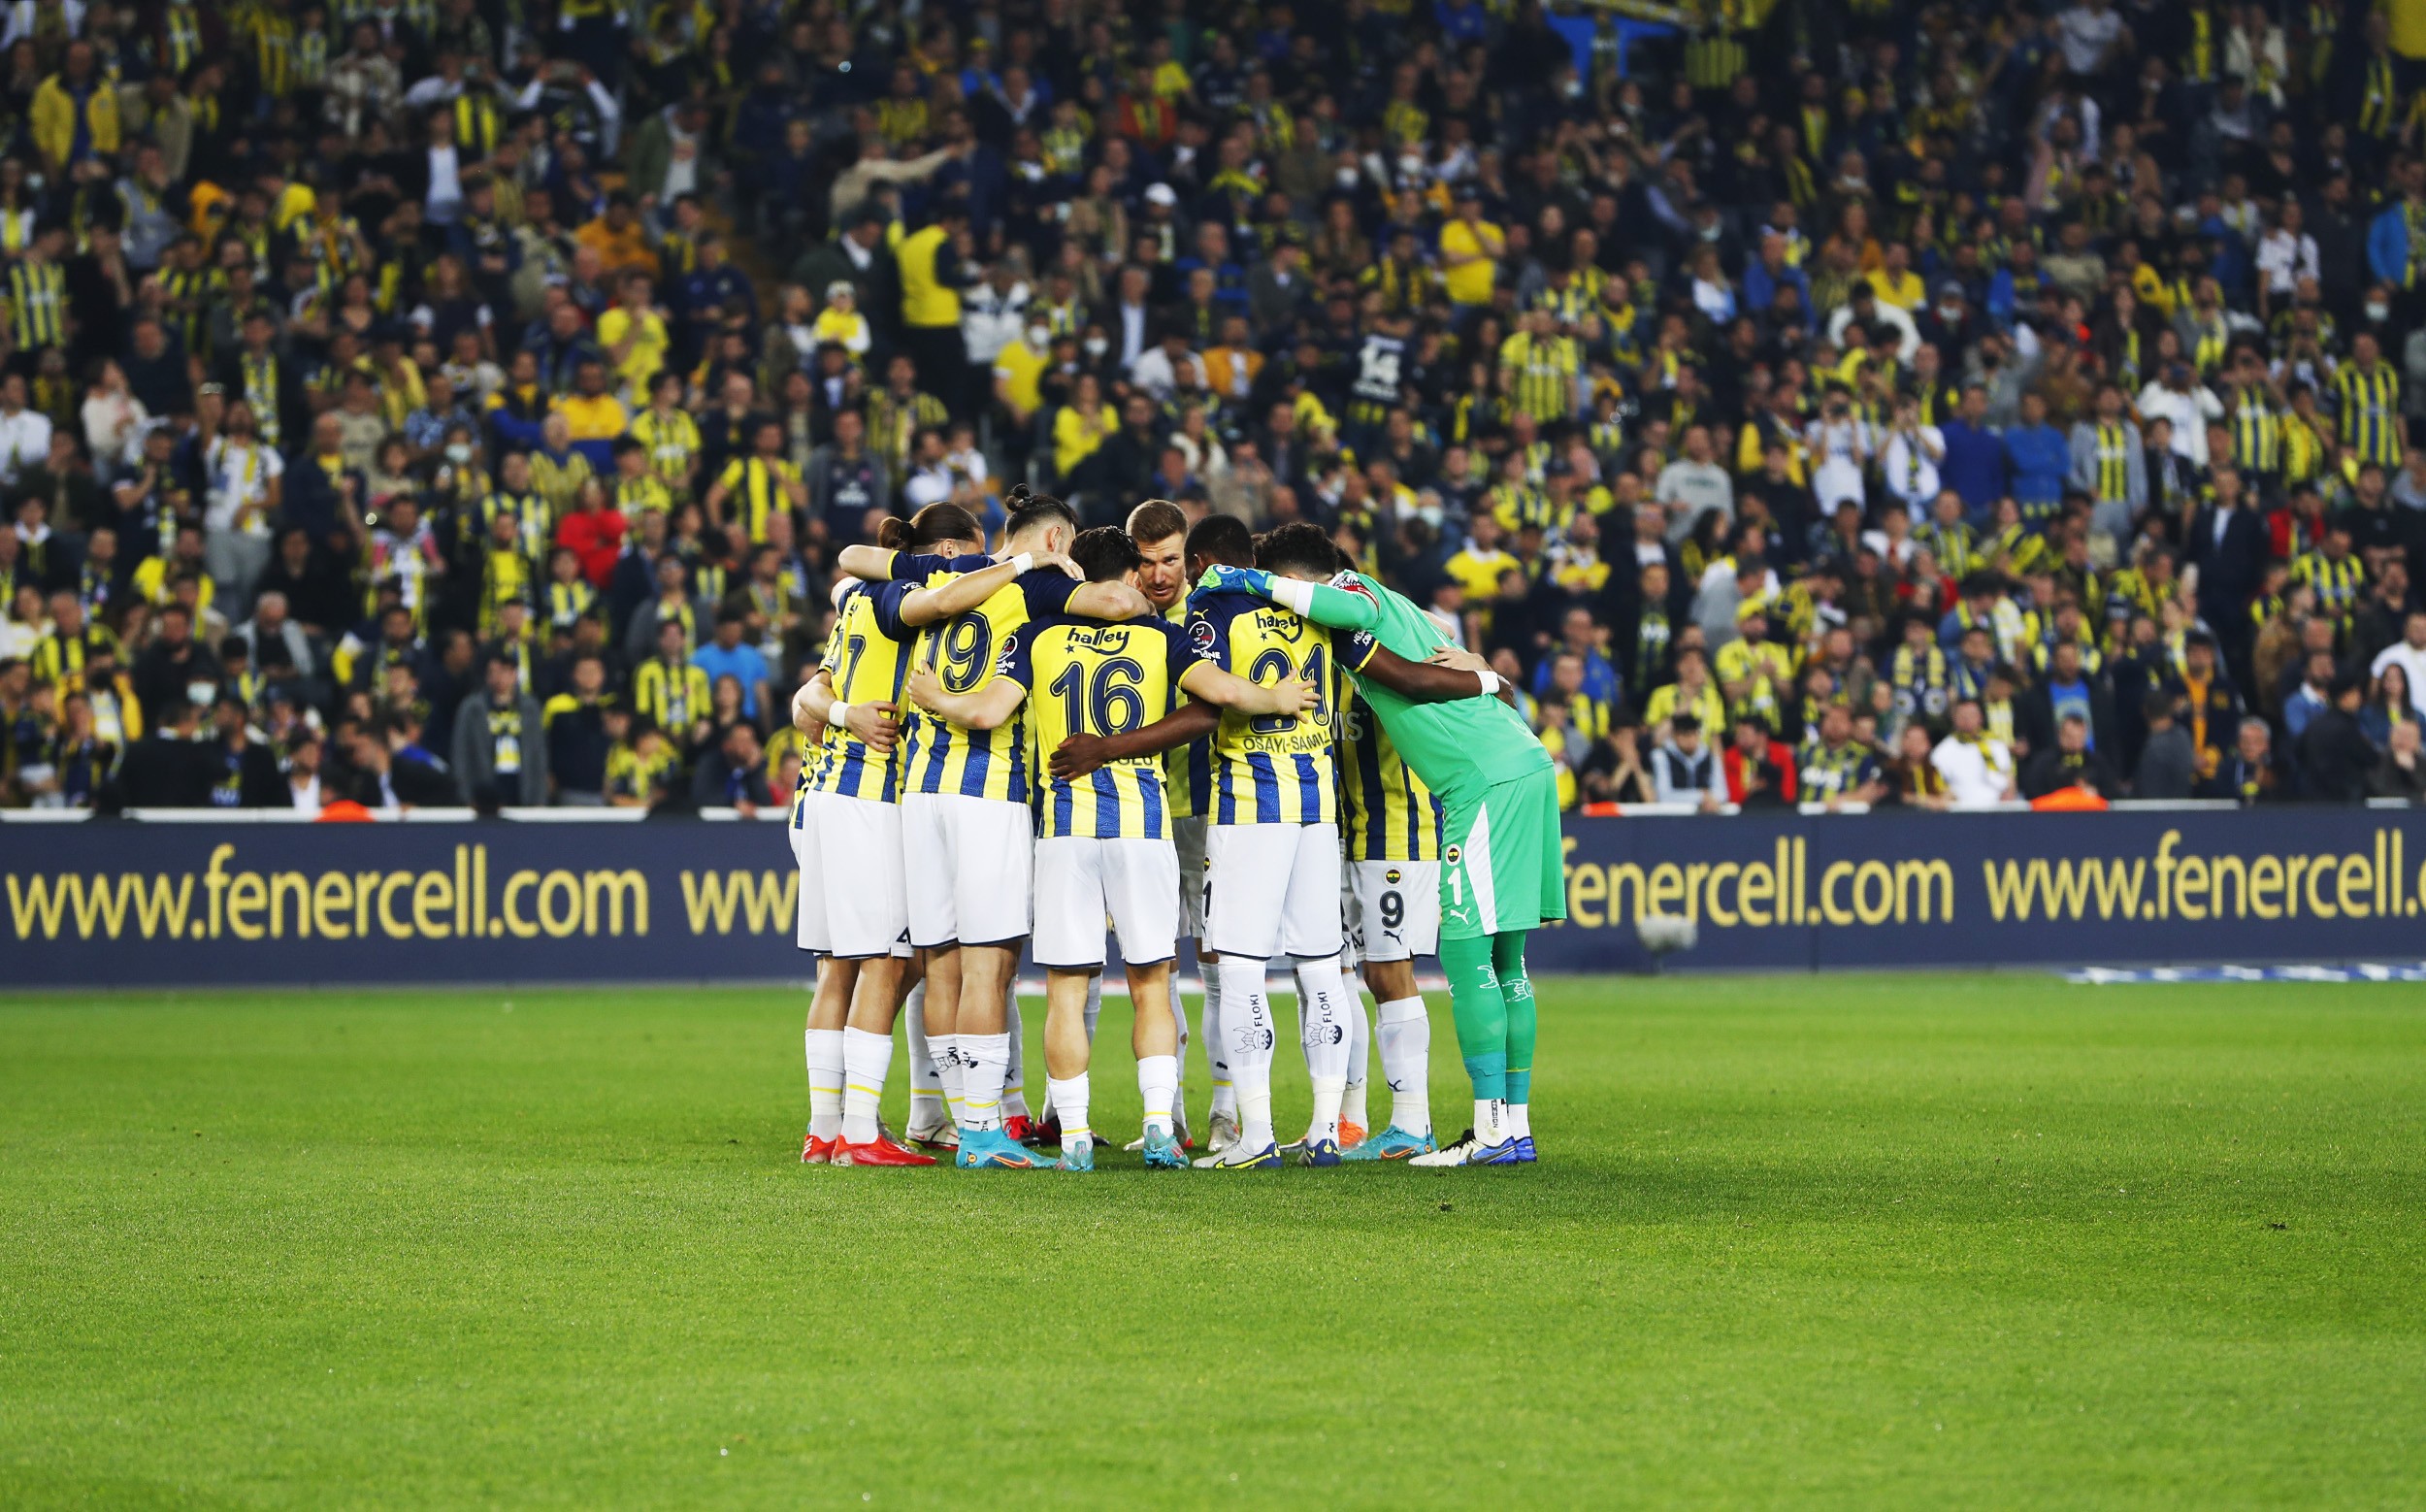 Fenerbahçe, Çaykur Rizespor’a 2018’den beri kaybetmiyor